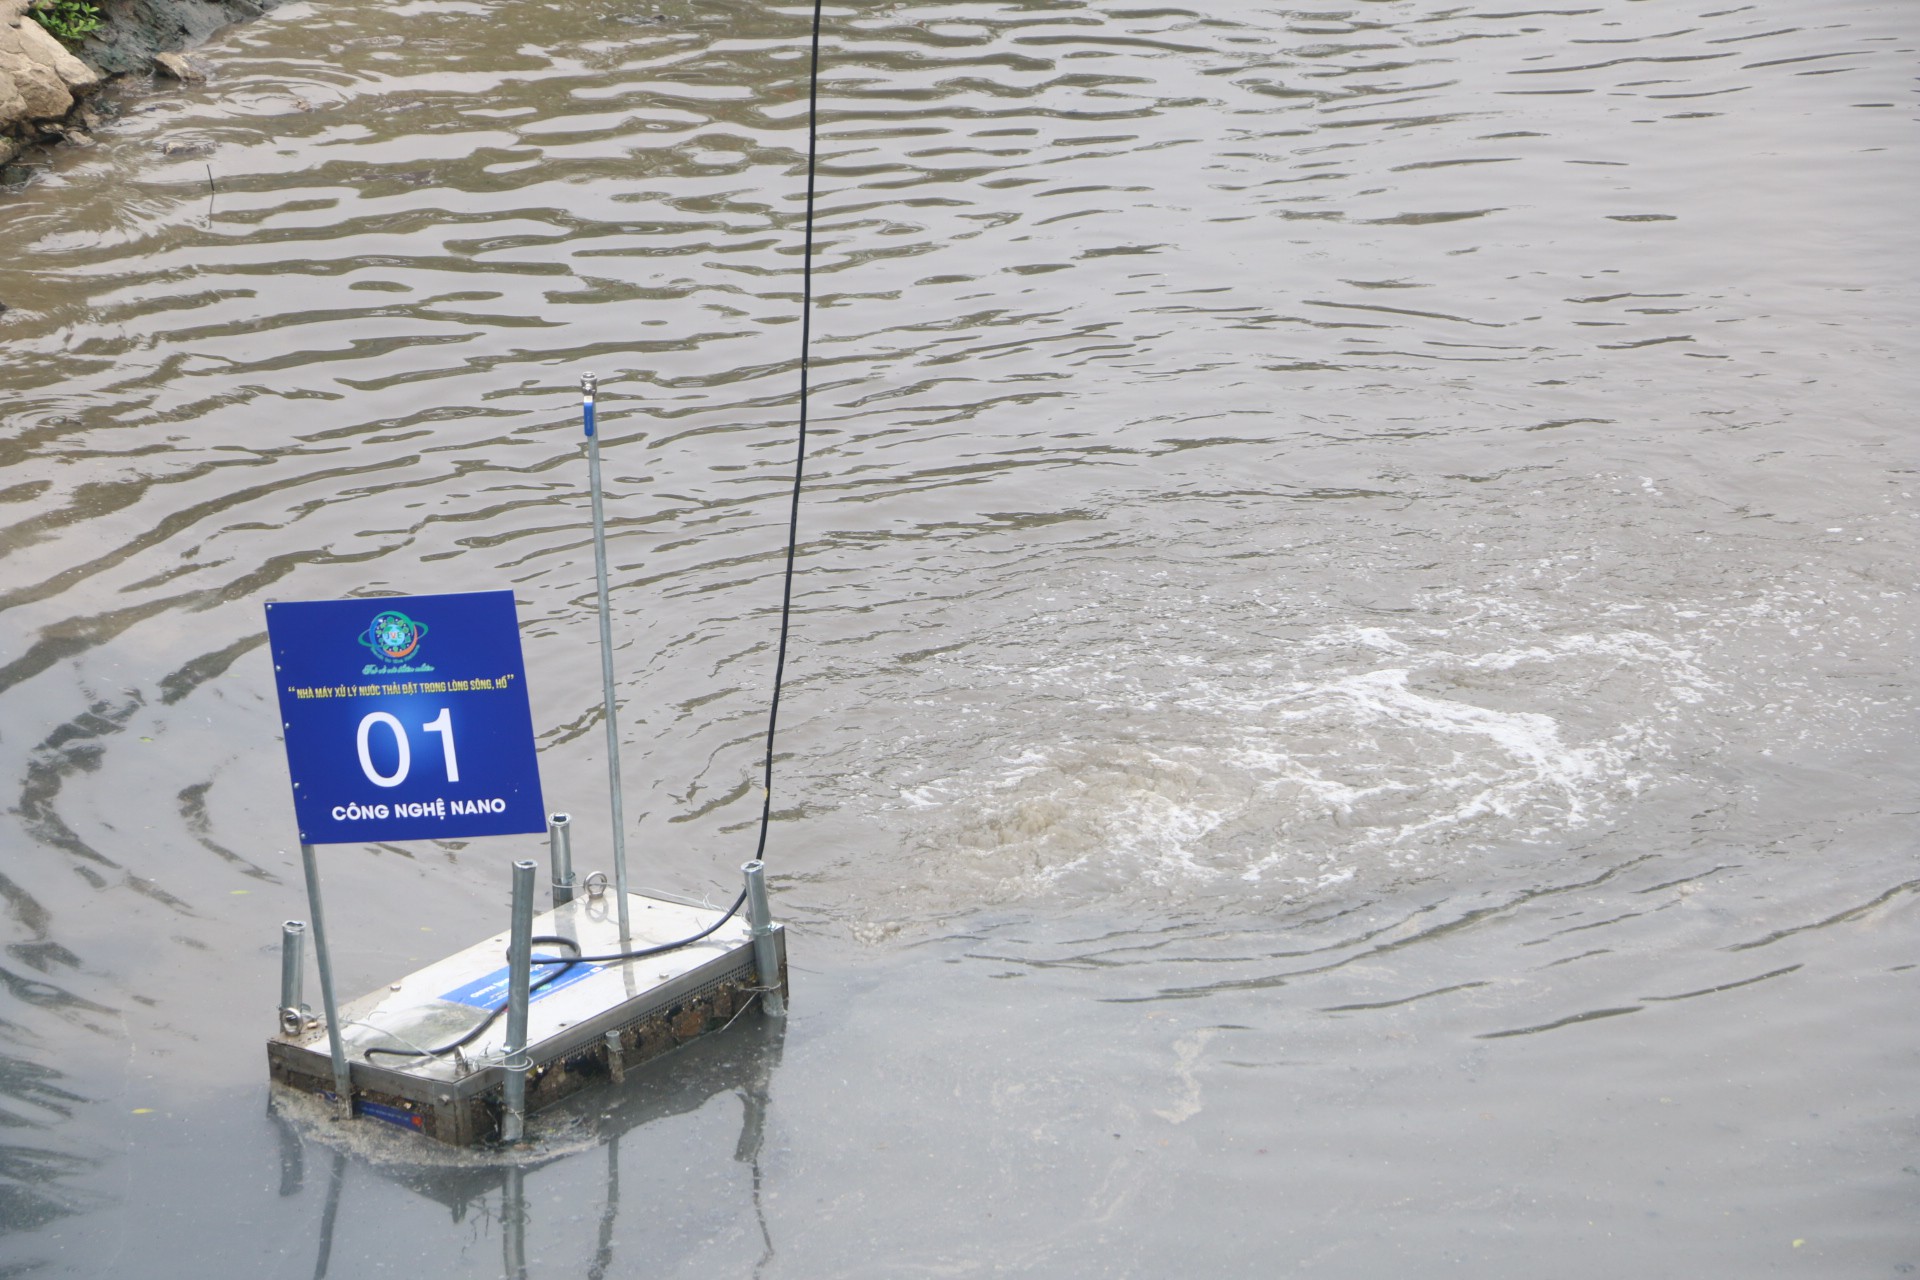 Sông Tô Lịch chuyển biến ra sao sau 6 ngày thử nghiệm công nghệ Nhật Bản - Ảnh 6.